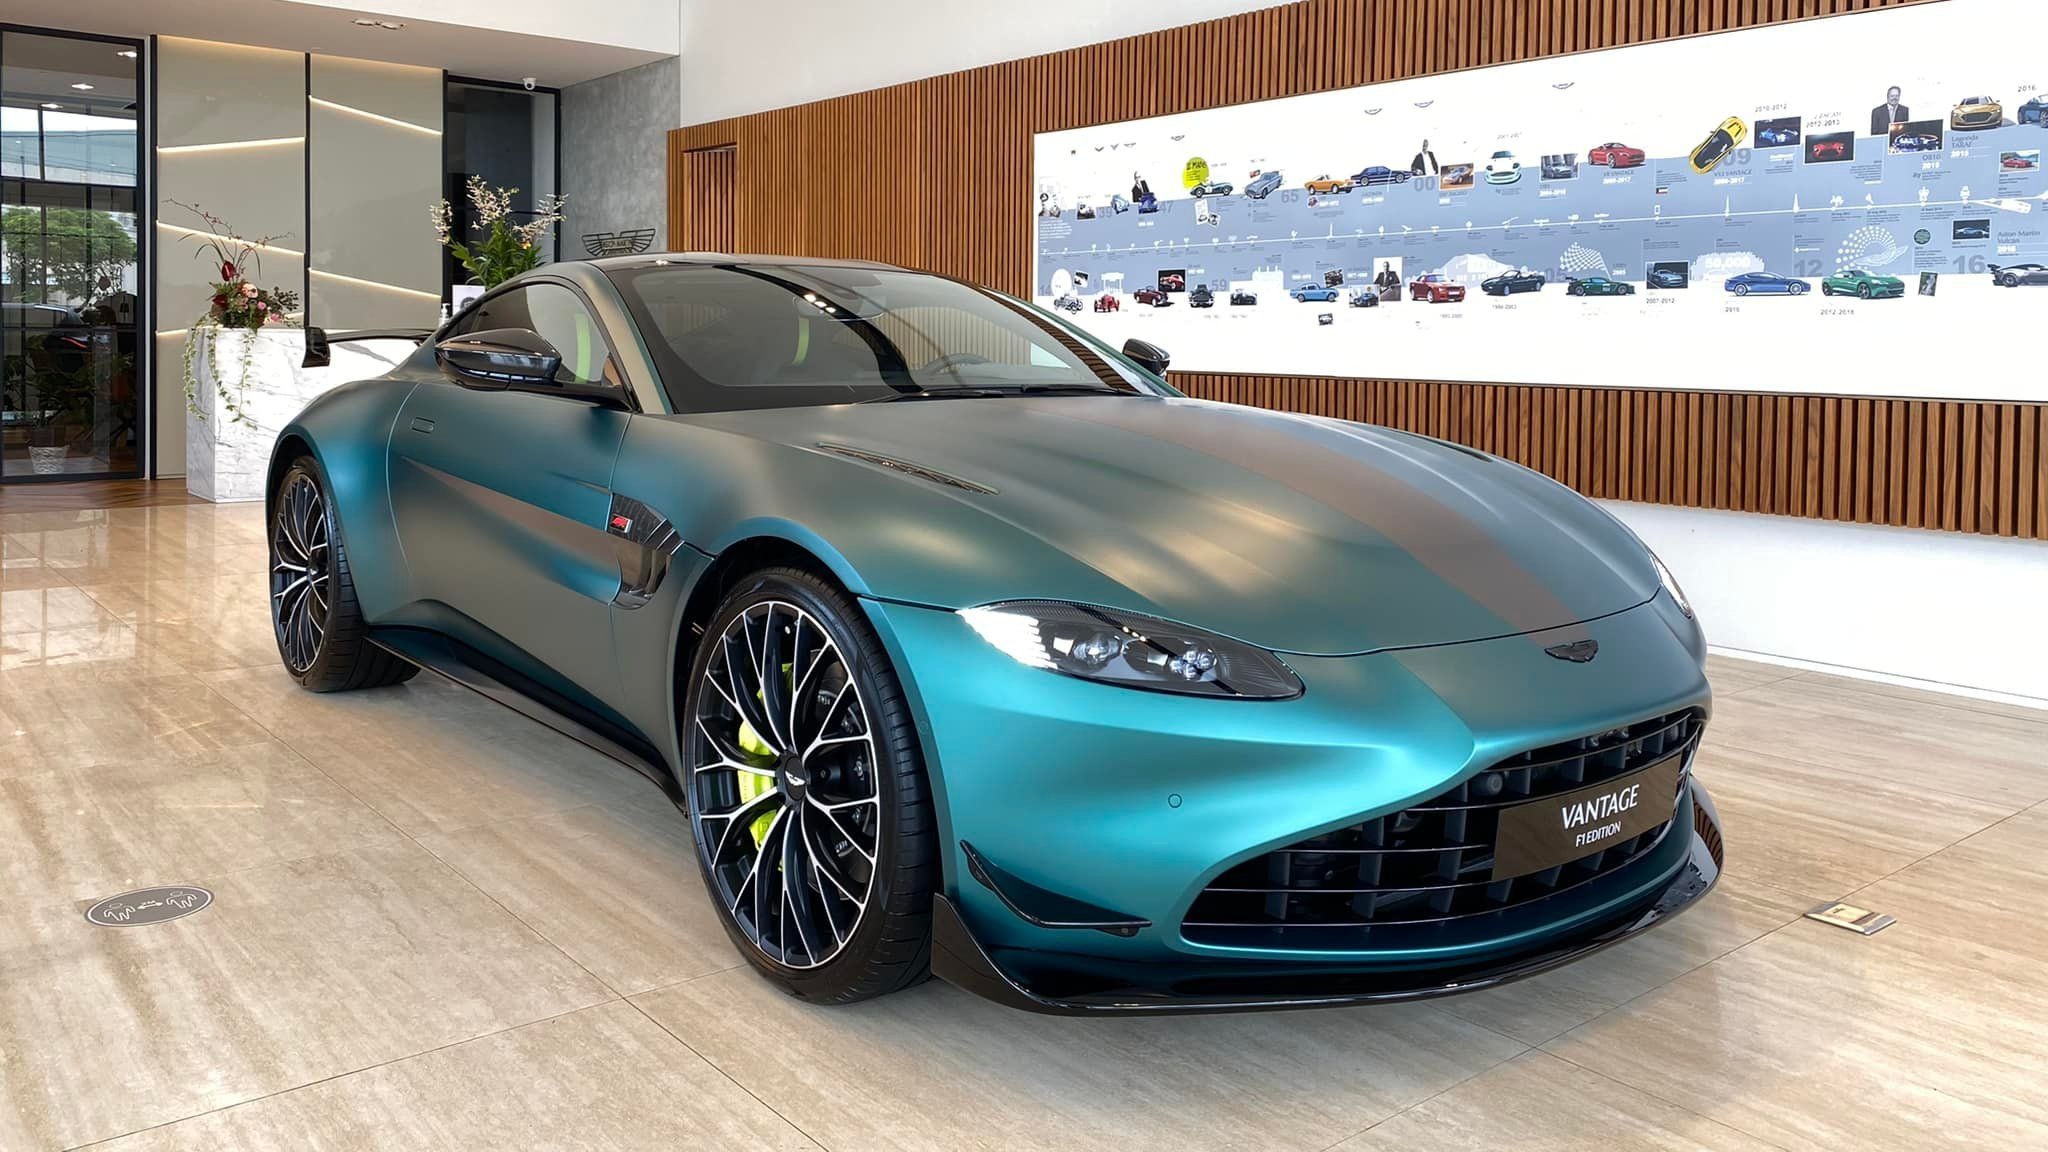 Bộ đôi siêu xe Aston Martin giá gần 40 tỉ đồng về Việt Nam - ảnh 2